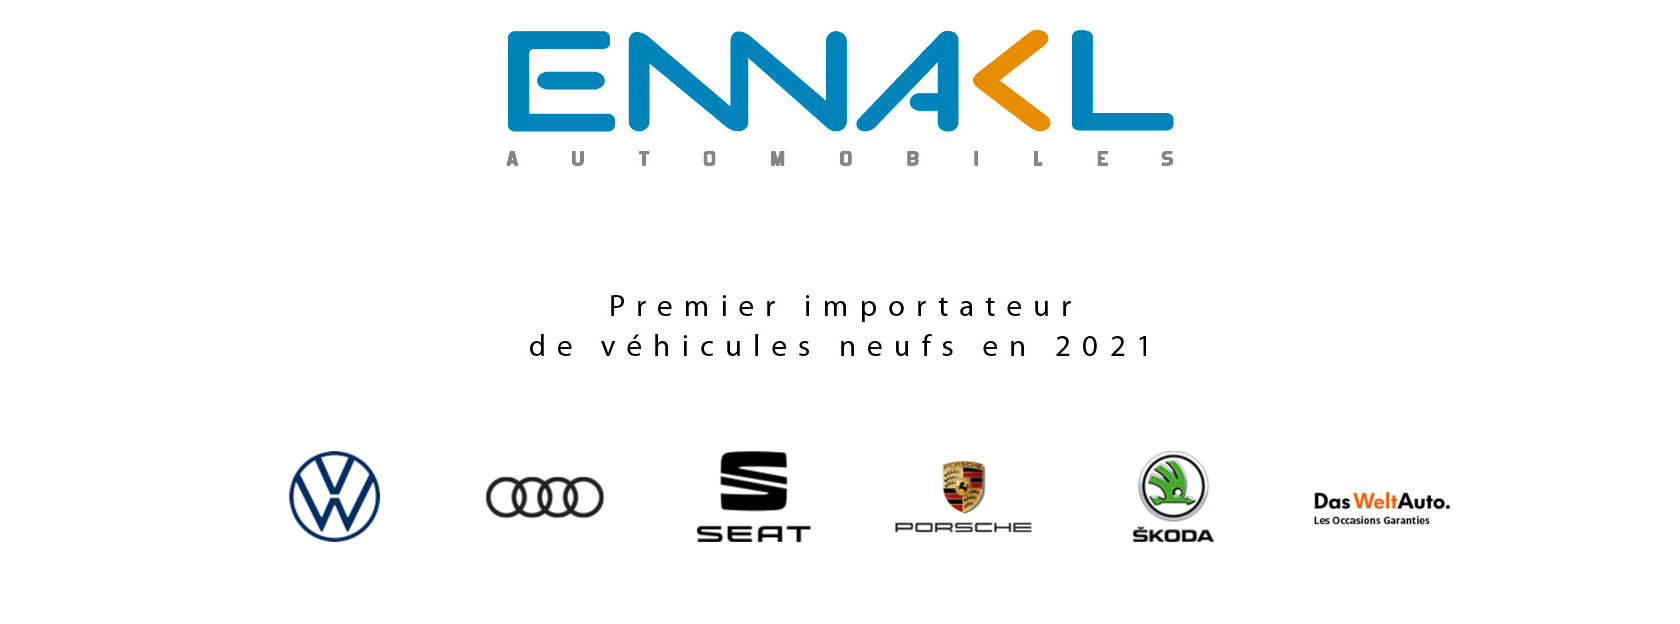 Ennakl Automobiles premier Importateur de véhicules neufs en Tunisie en 2021 